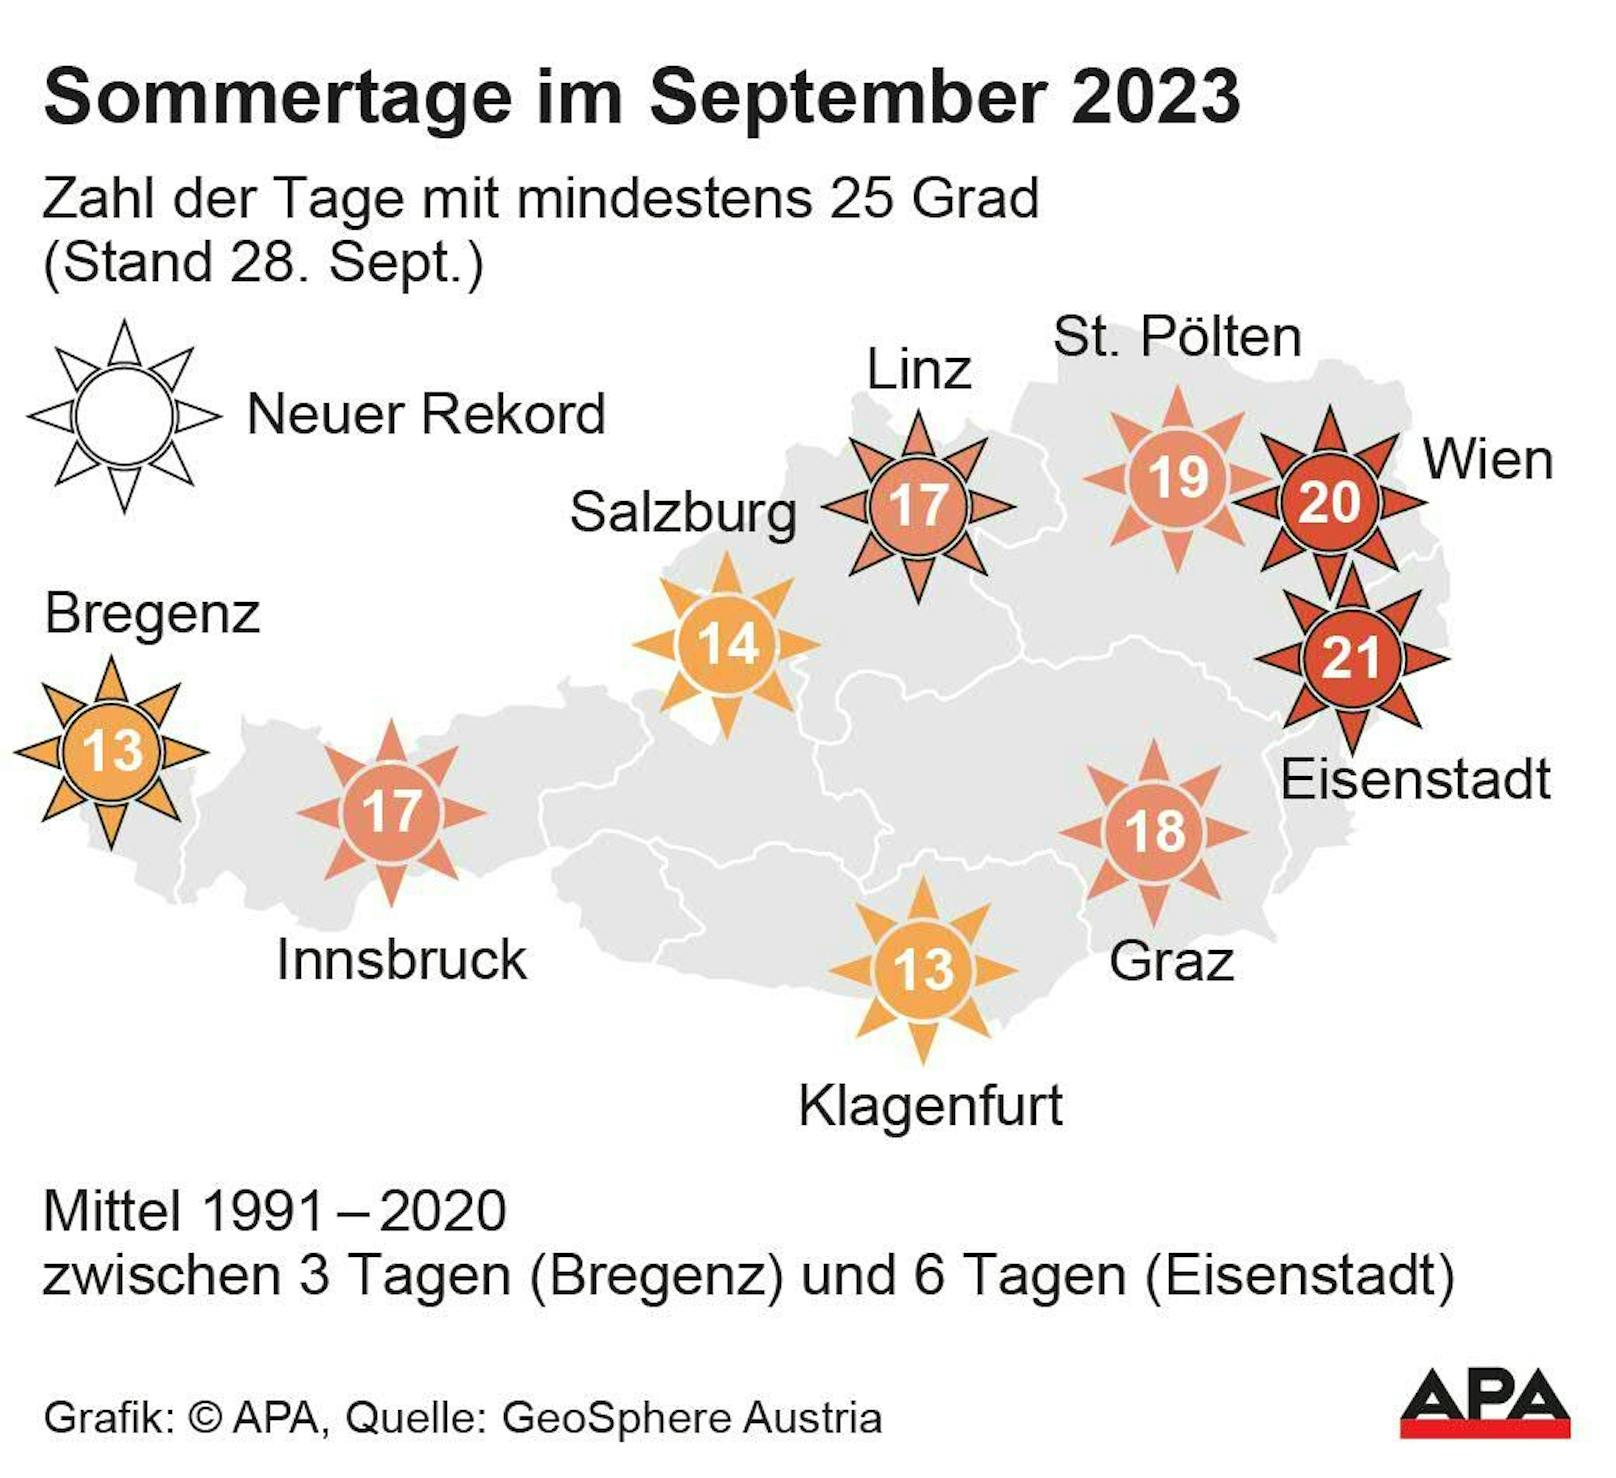 Zahl der Tage mit mindestens 25 Grad im September 2023, nach Landeshauptstädten.